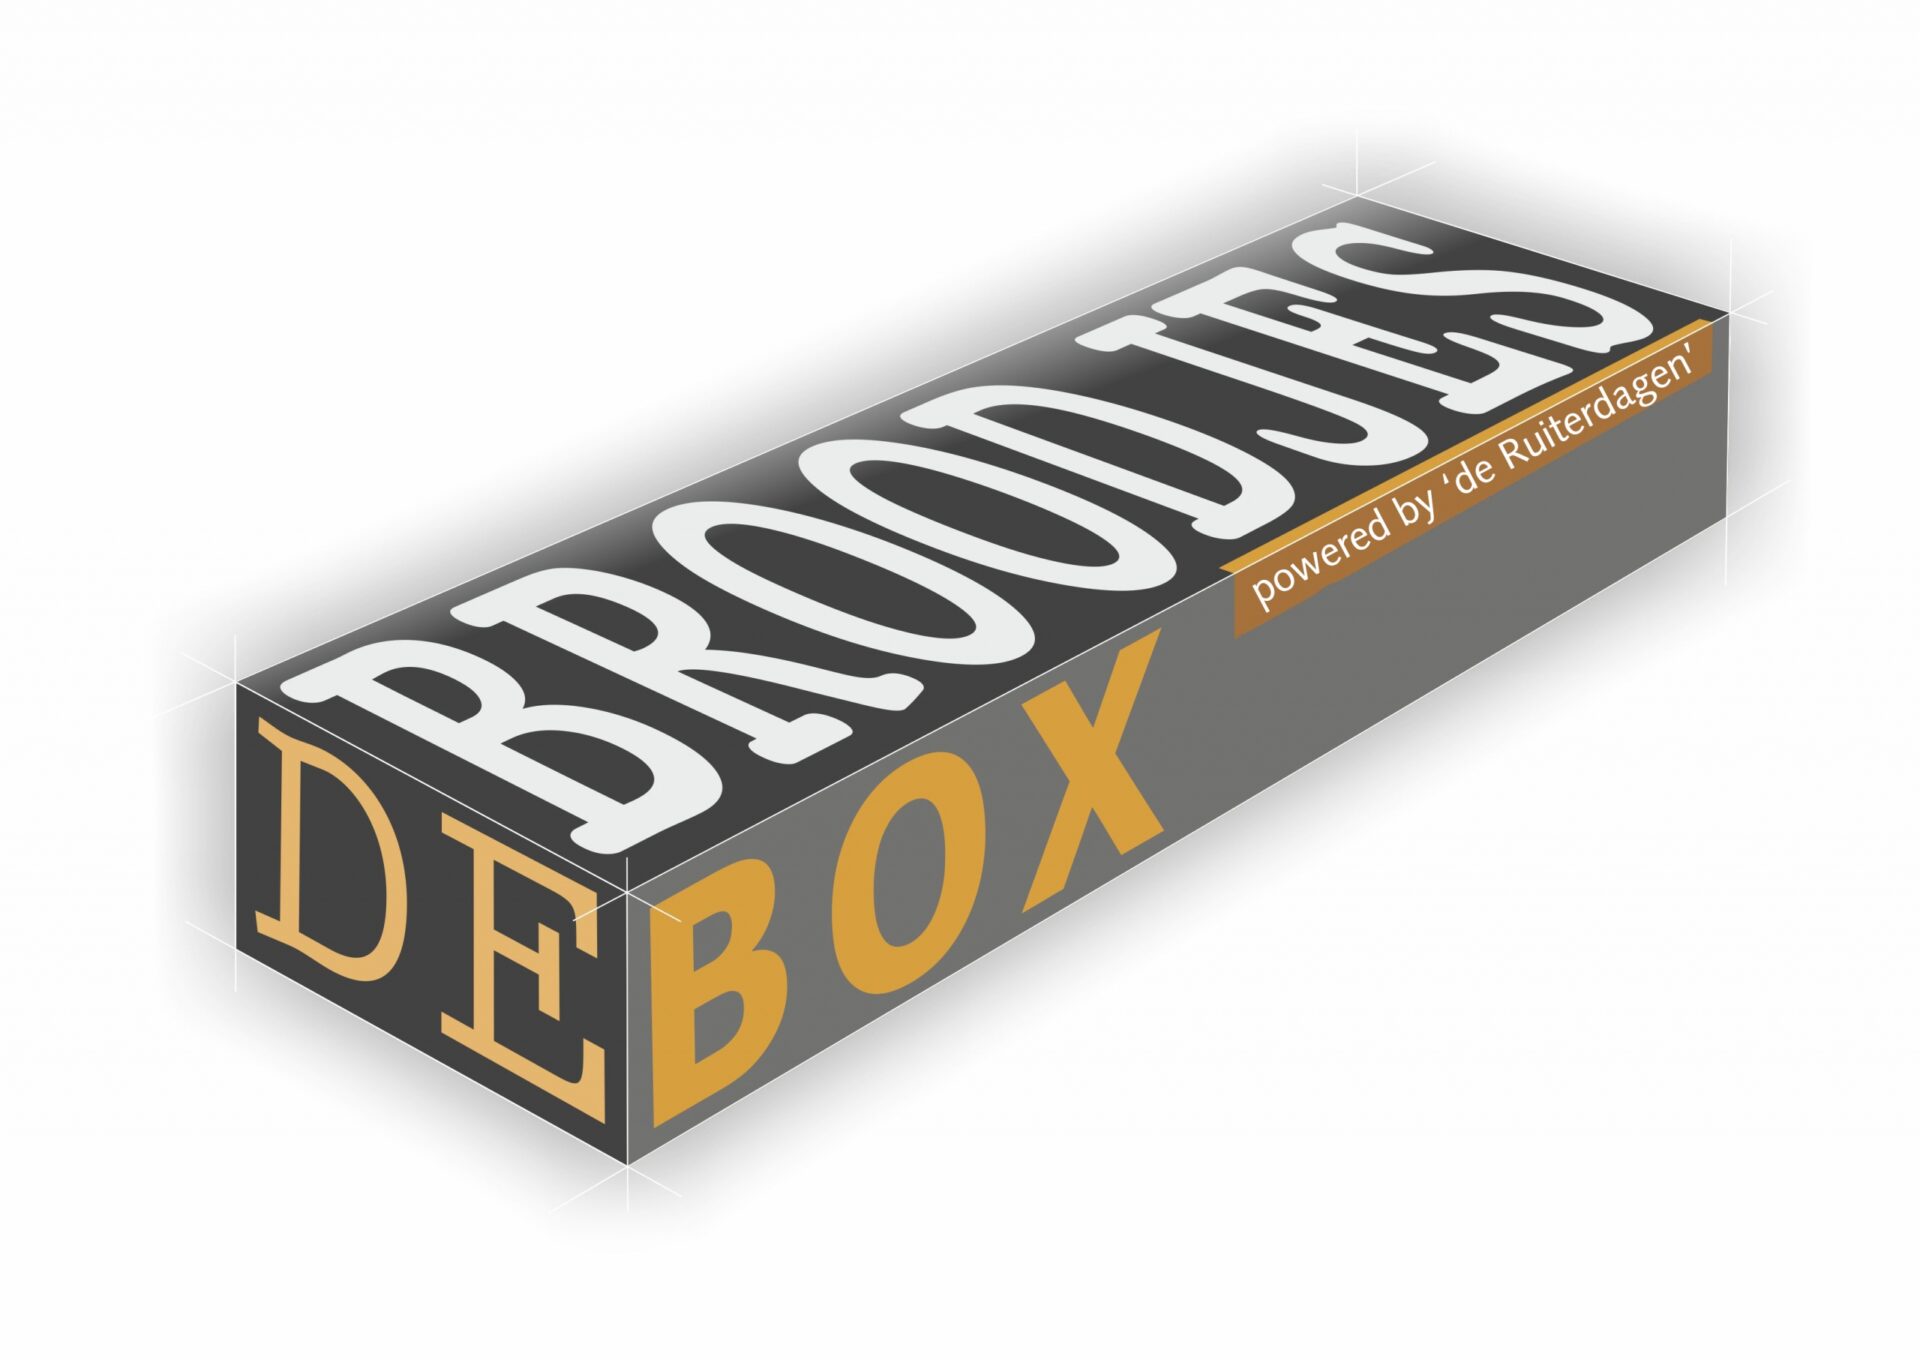 De Broodjesbox